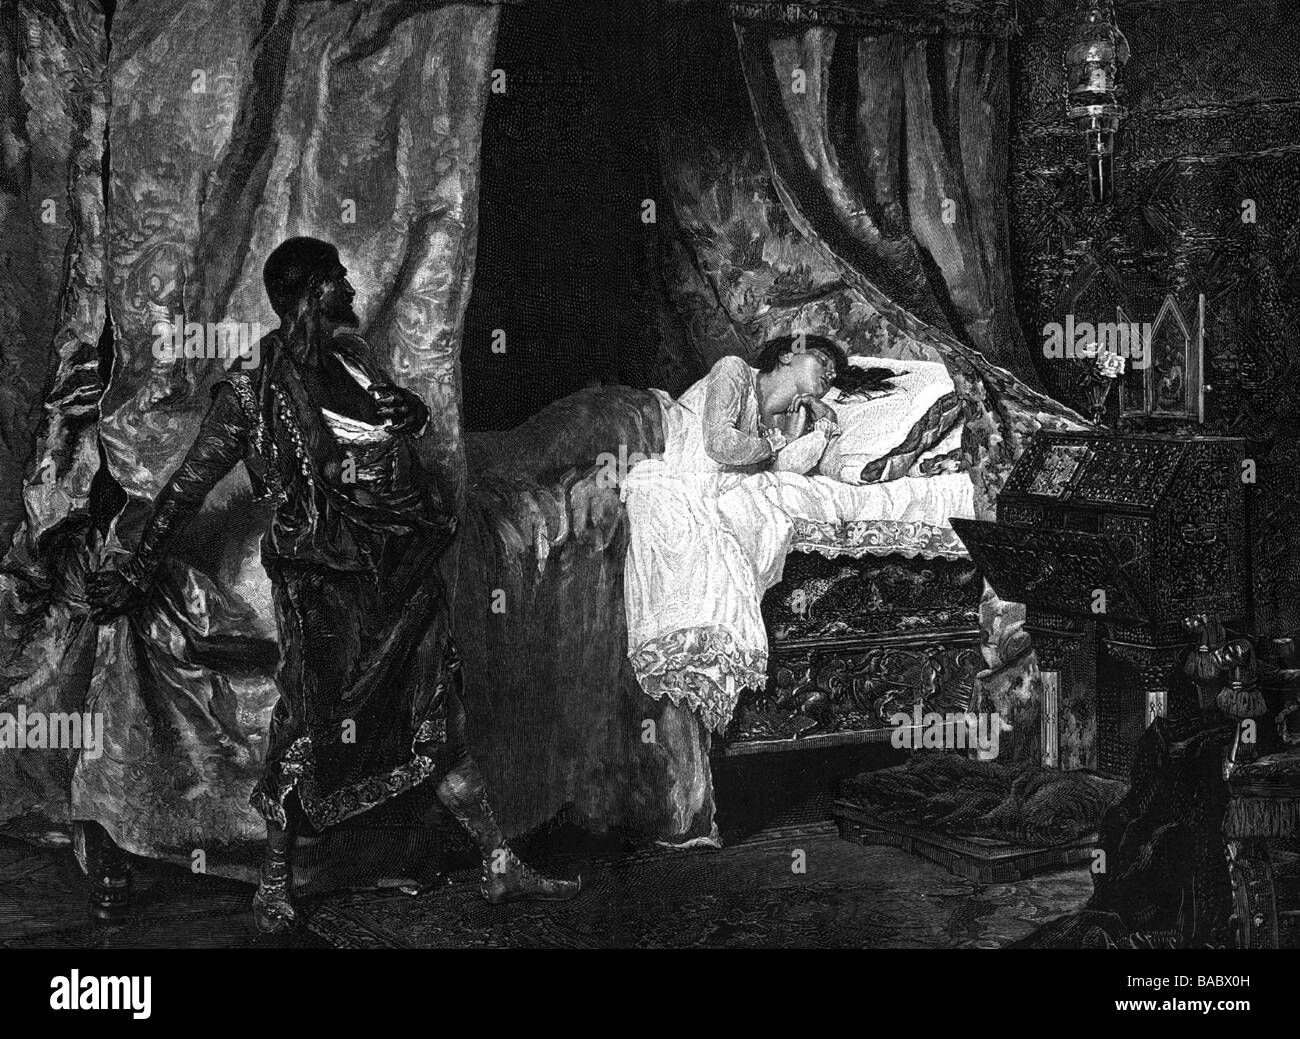 Munoz Degrain, Antonio, 1840 - 1924, spanischer Maler, seine Gemälde "Othello und Desmodena", Kupferstich, Artist's Urheberrecht nicht gelöscht werden Stockfoto